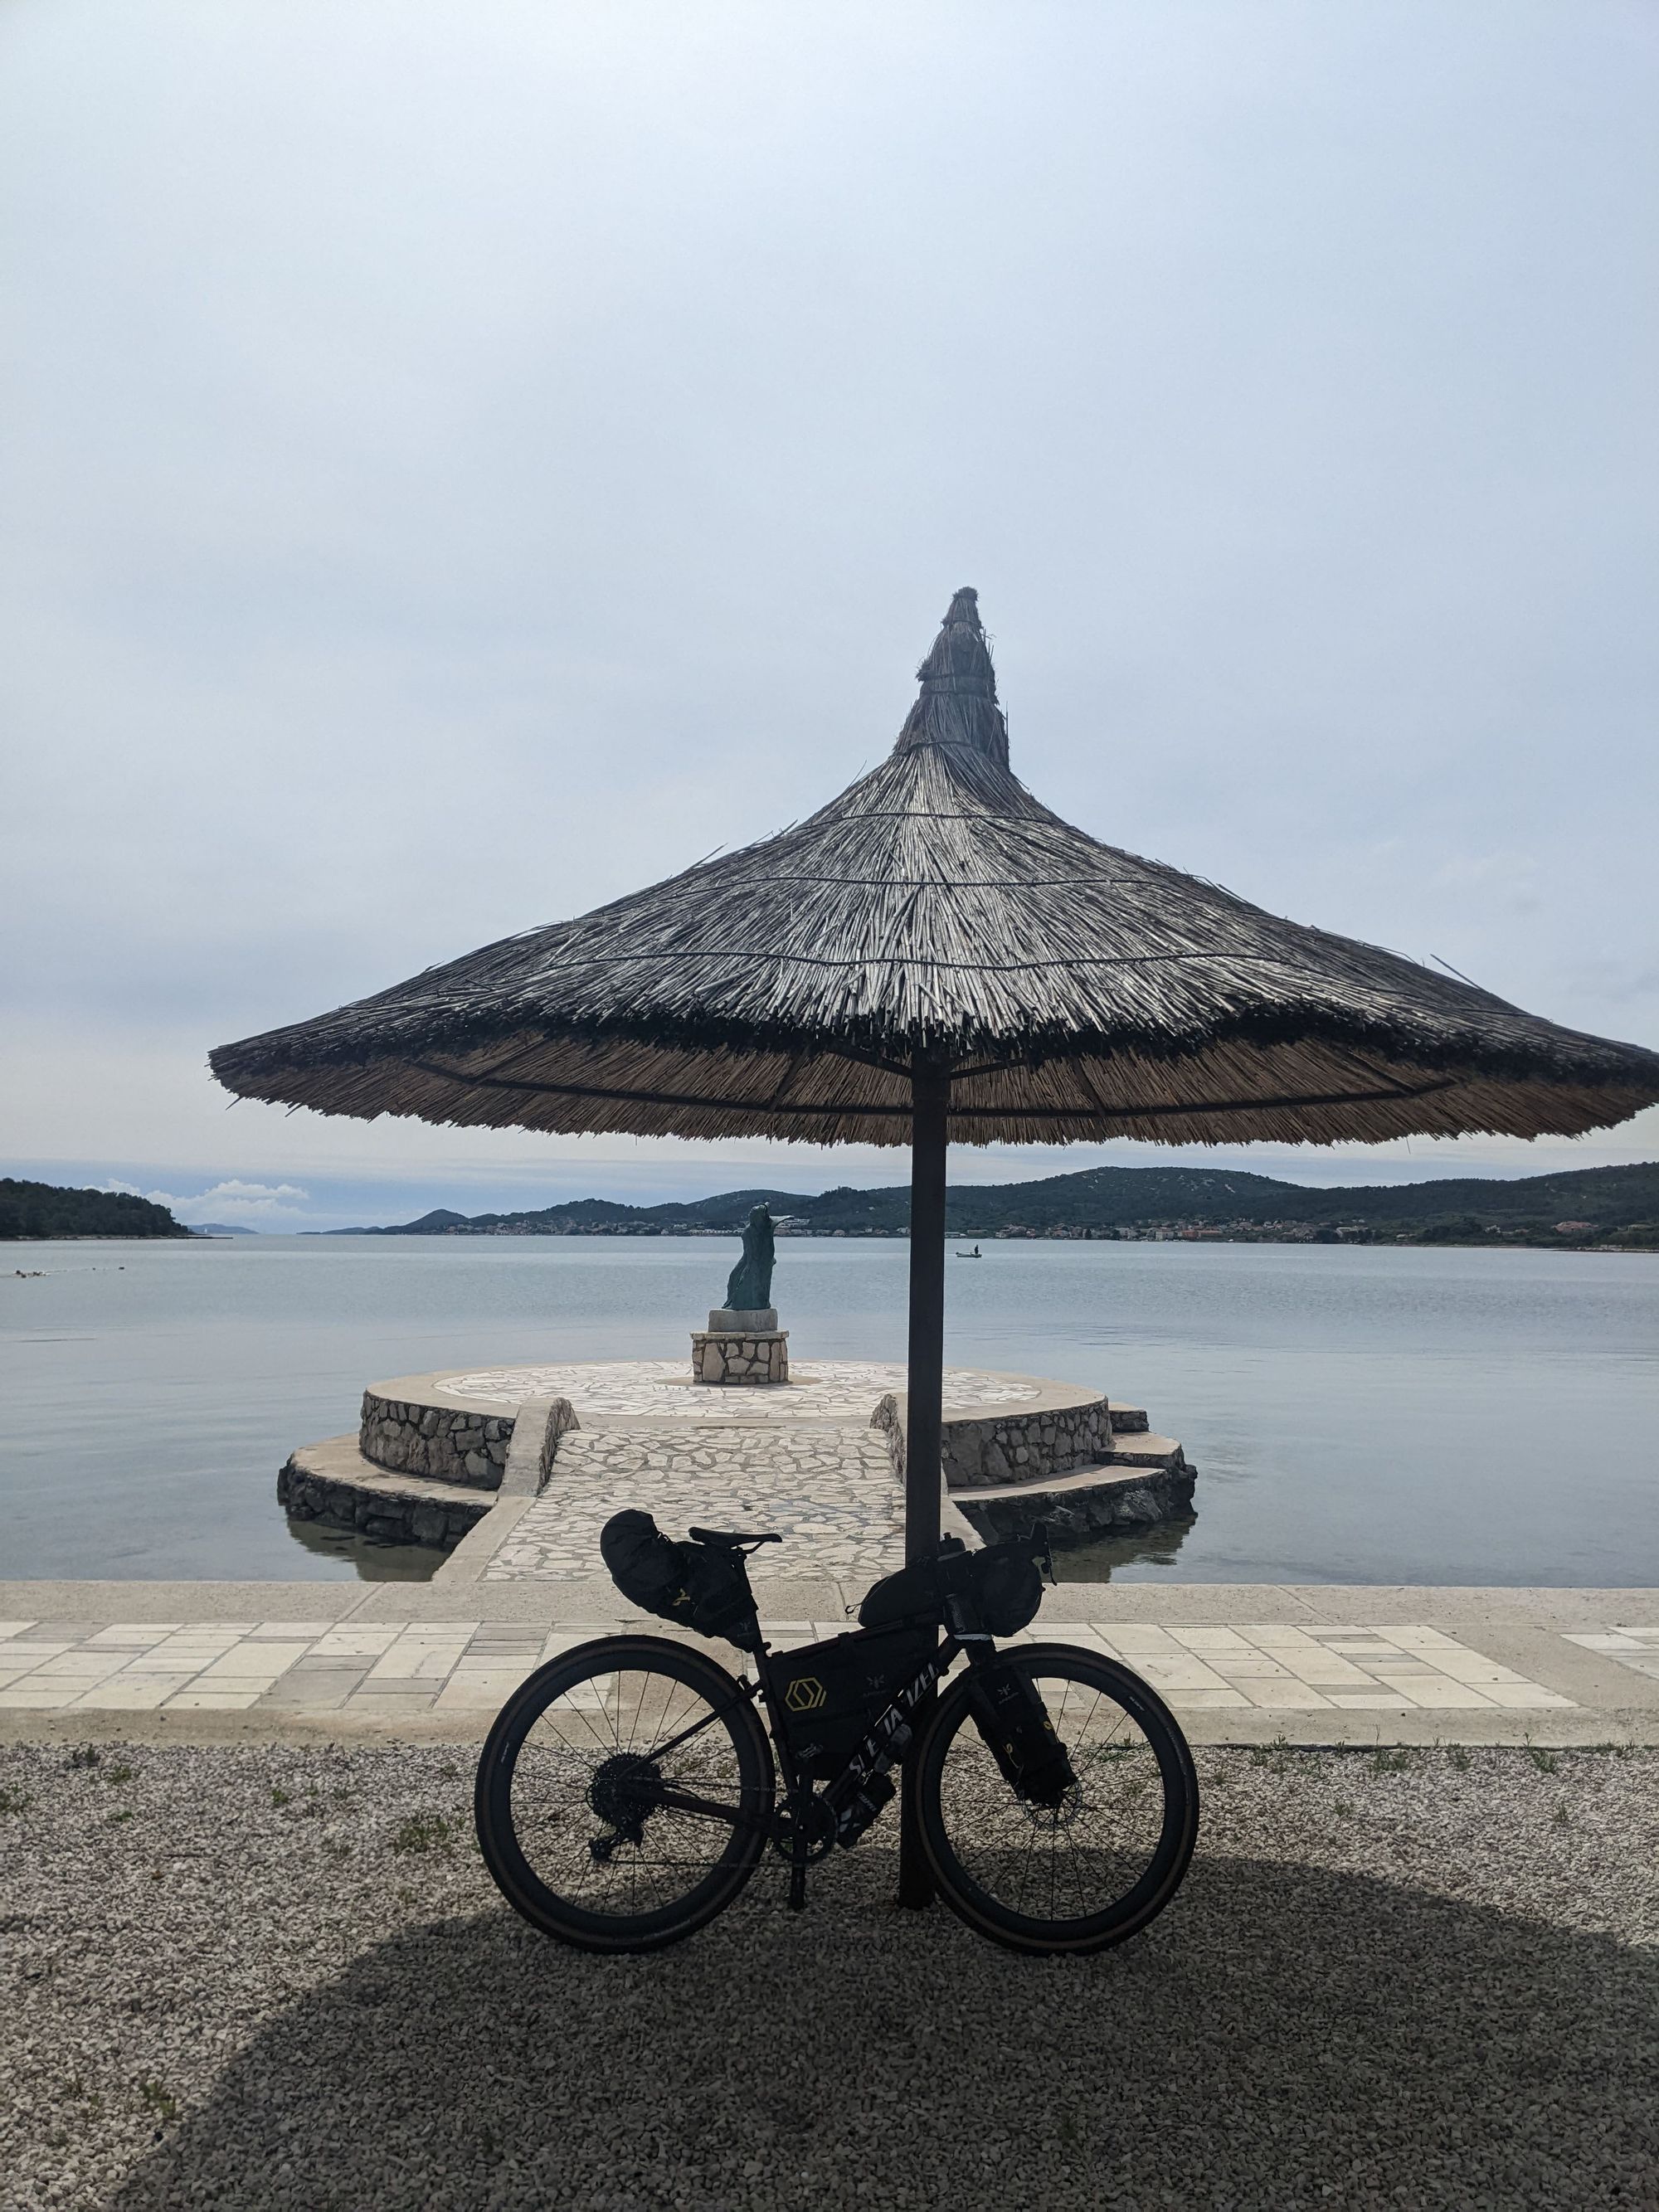 Cycling 2,300km to Croatia